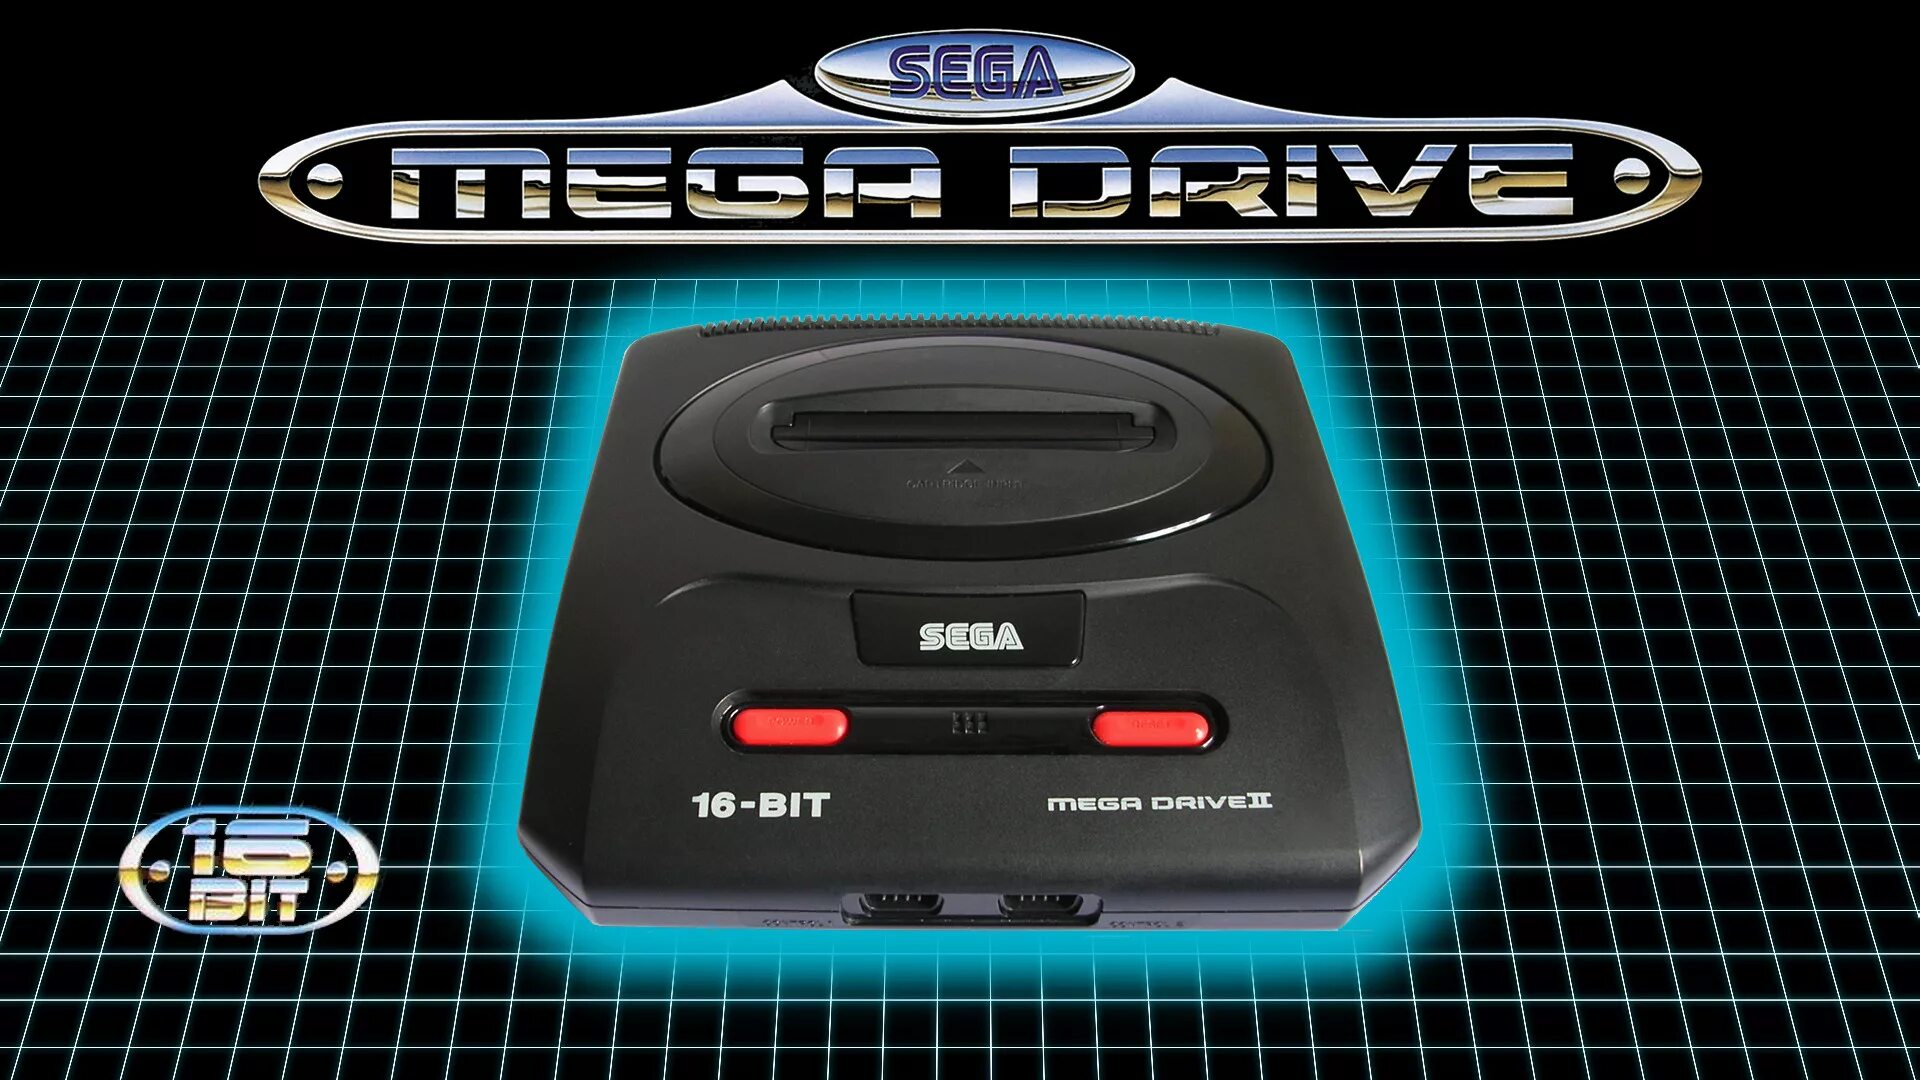 Игровая приставка Sega Mega Drive II. Игровая приставка Sega Mega Drive 2. Sega Mega Drive 2 Genesis. Sega Genesis and Sega Mega Drive. Сега генезис игры